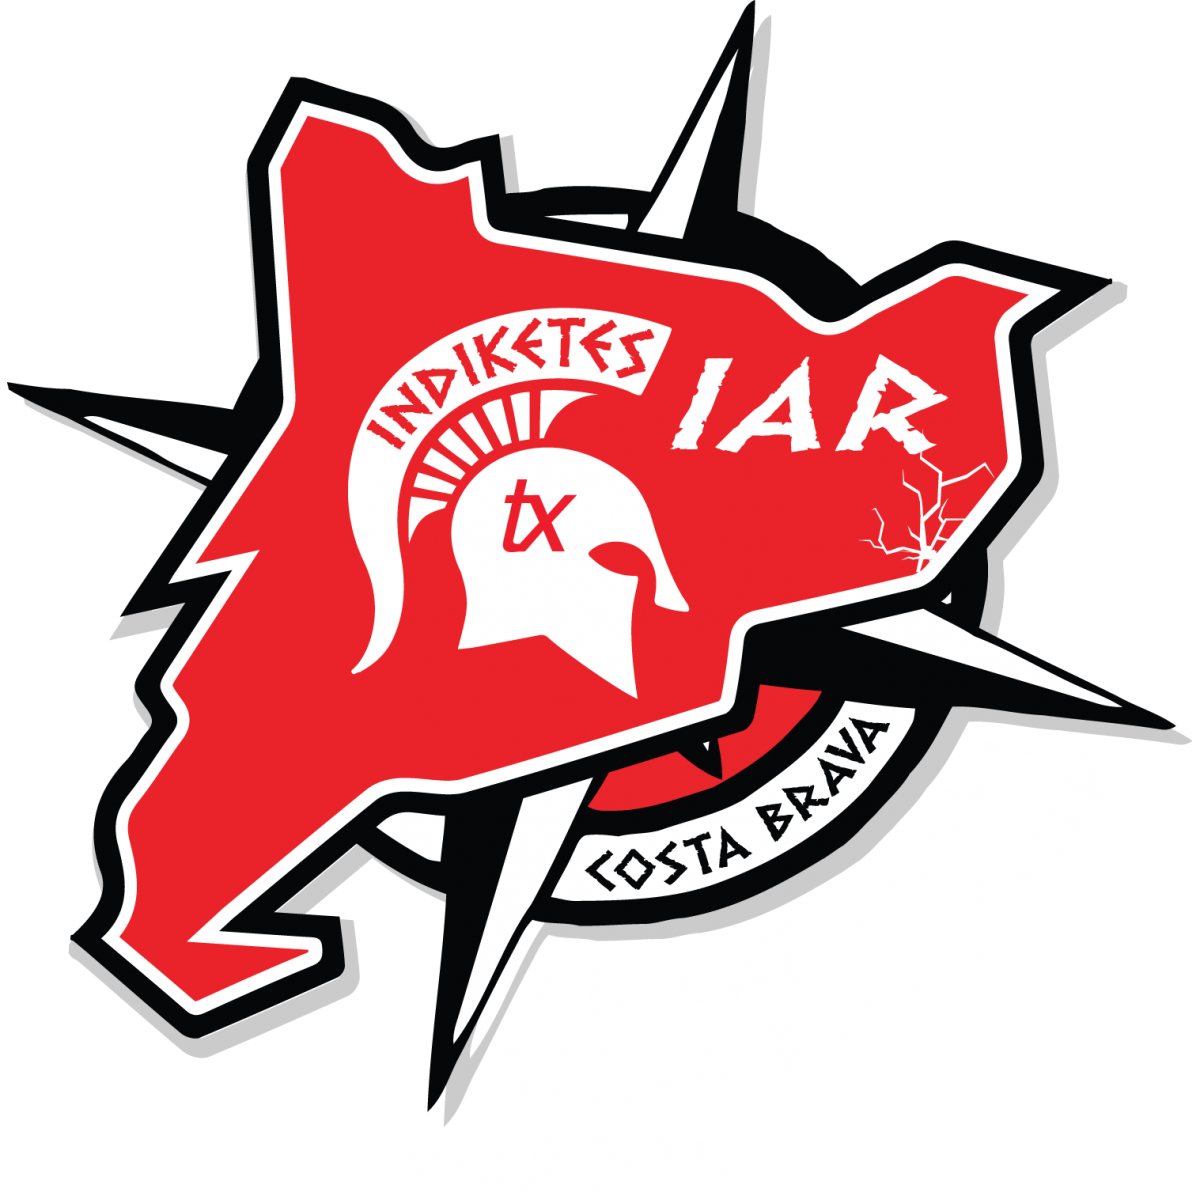 Indiketes - AR Catalunya Championship 2016